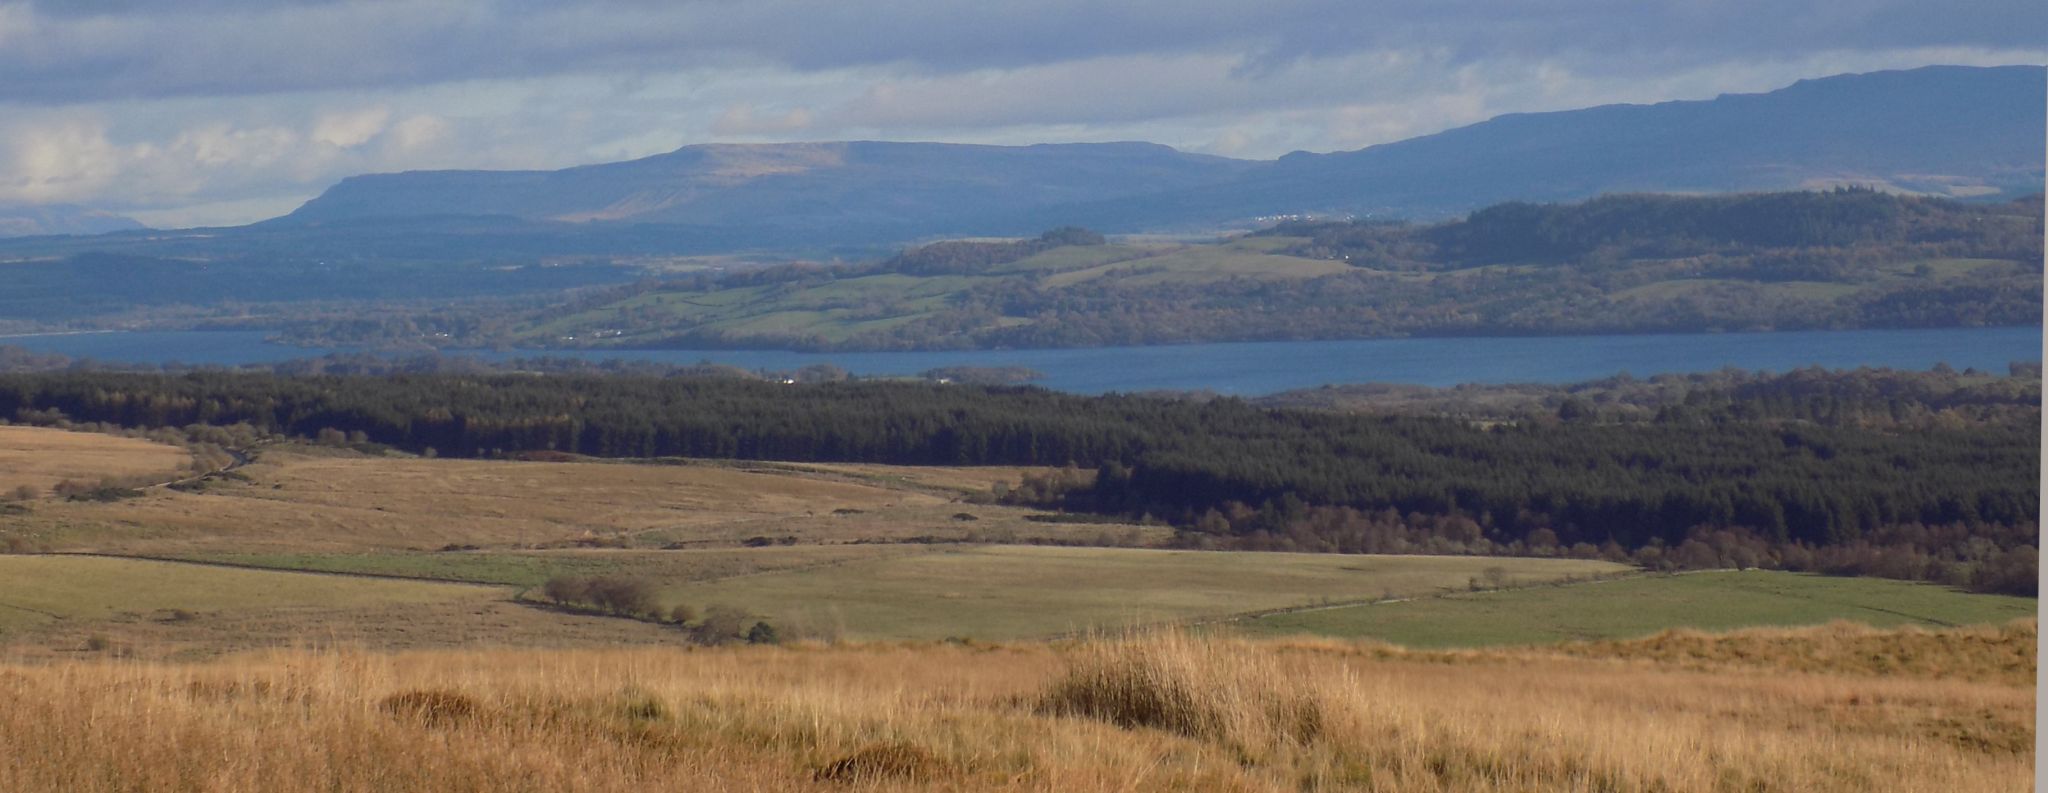 Gargunnock Hills and Campsie Fells beyond Loch Lomond